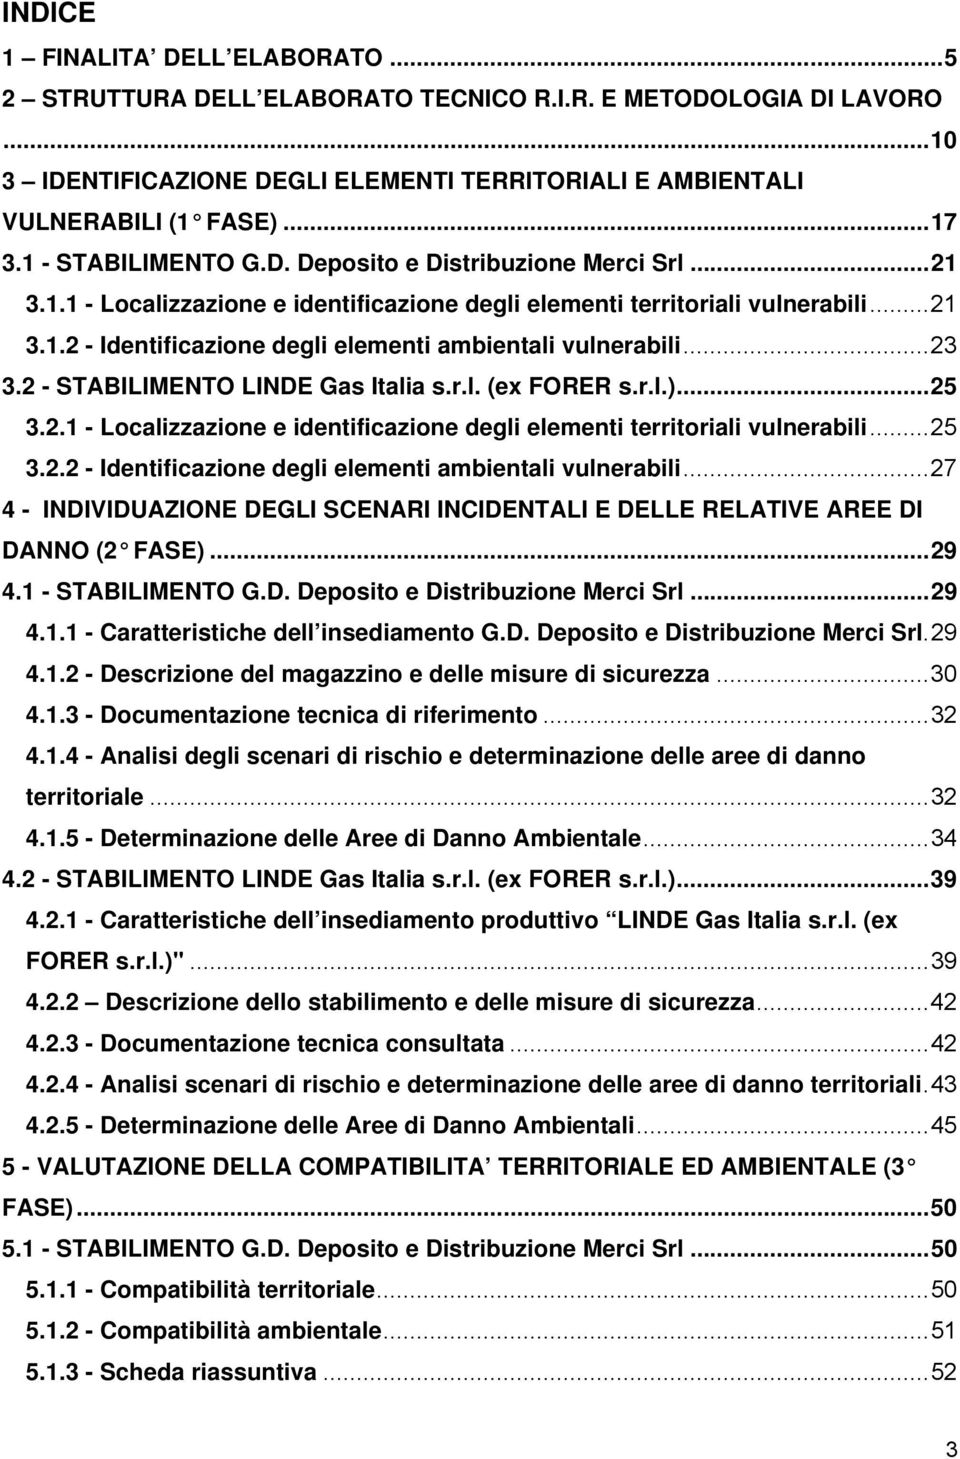 ..23 3.2 - STABILIMENTO LINDE Gas Italia s.r.l. (ex FORER s.r.l.)...25 3.2.1 - Localizzazione e identificazione degli elementi territoriali vulnerabili...25 3.2.2 - Identificazione degli elementi ambientali vulnerabili.